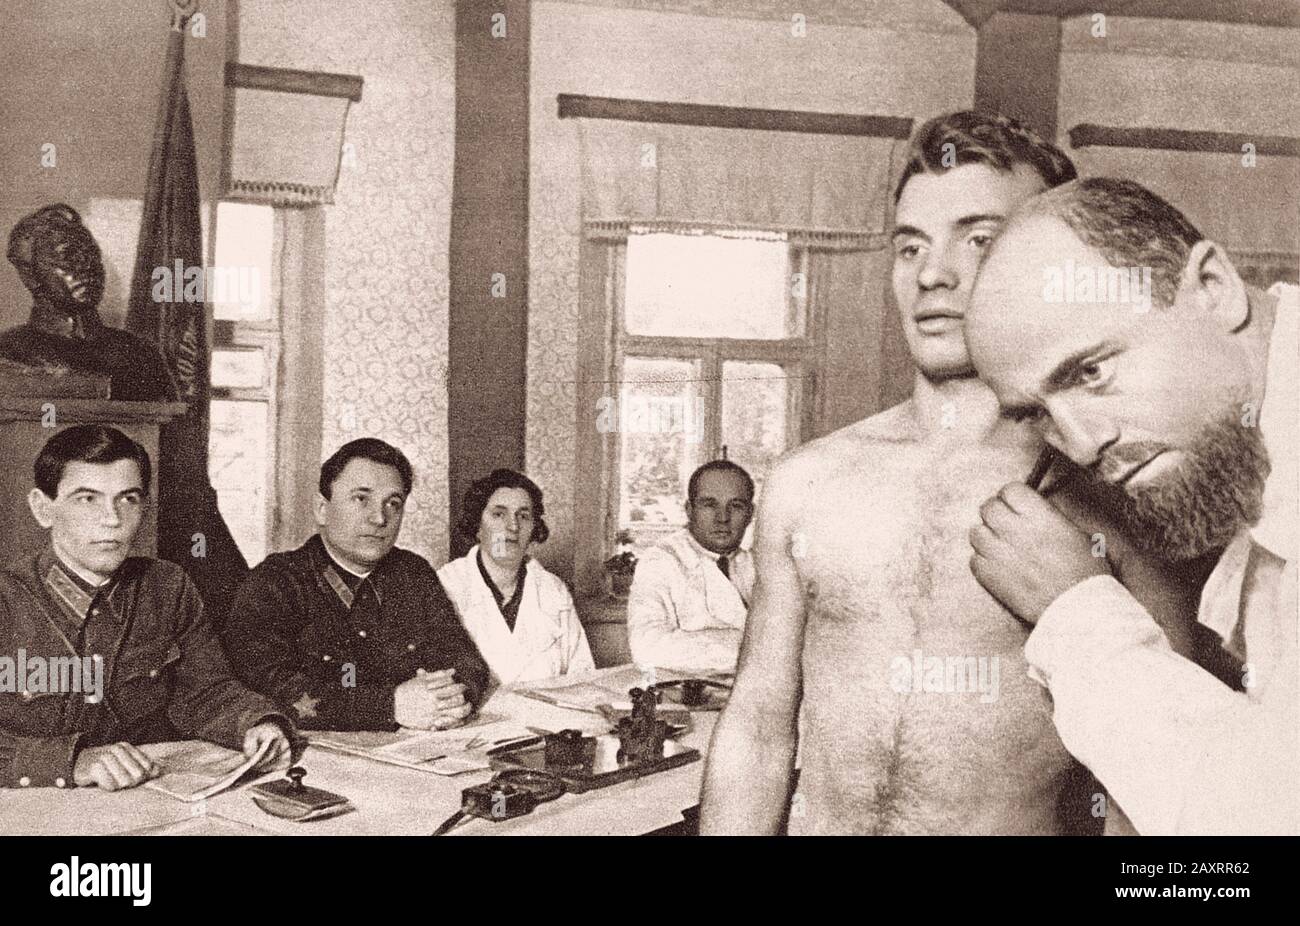 Esercito Rosso. Dal libro di propaganda sovietico del 1937. commissione medica Foto Stock